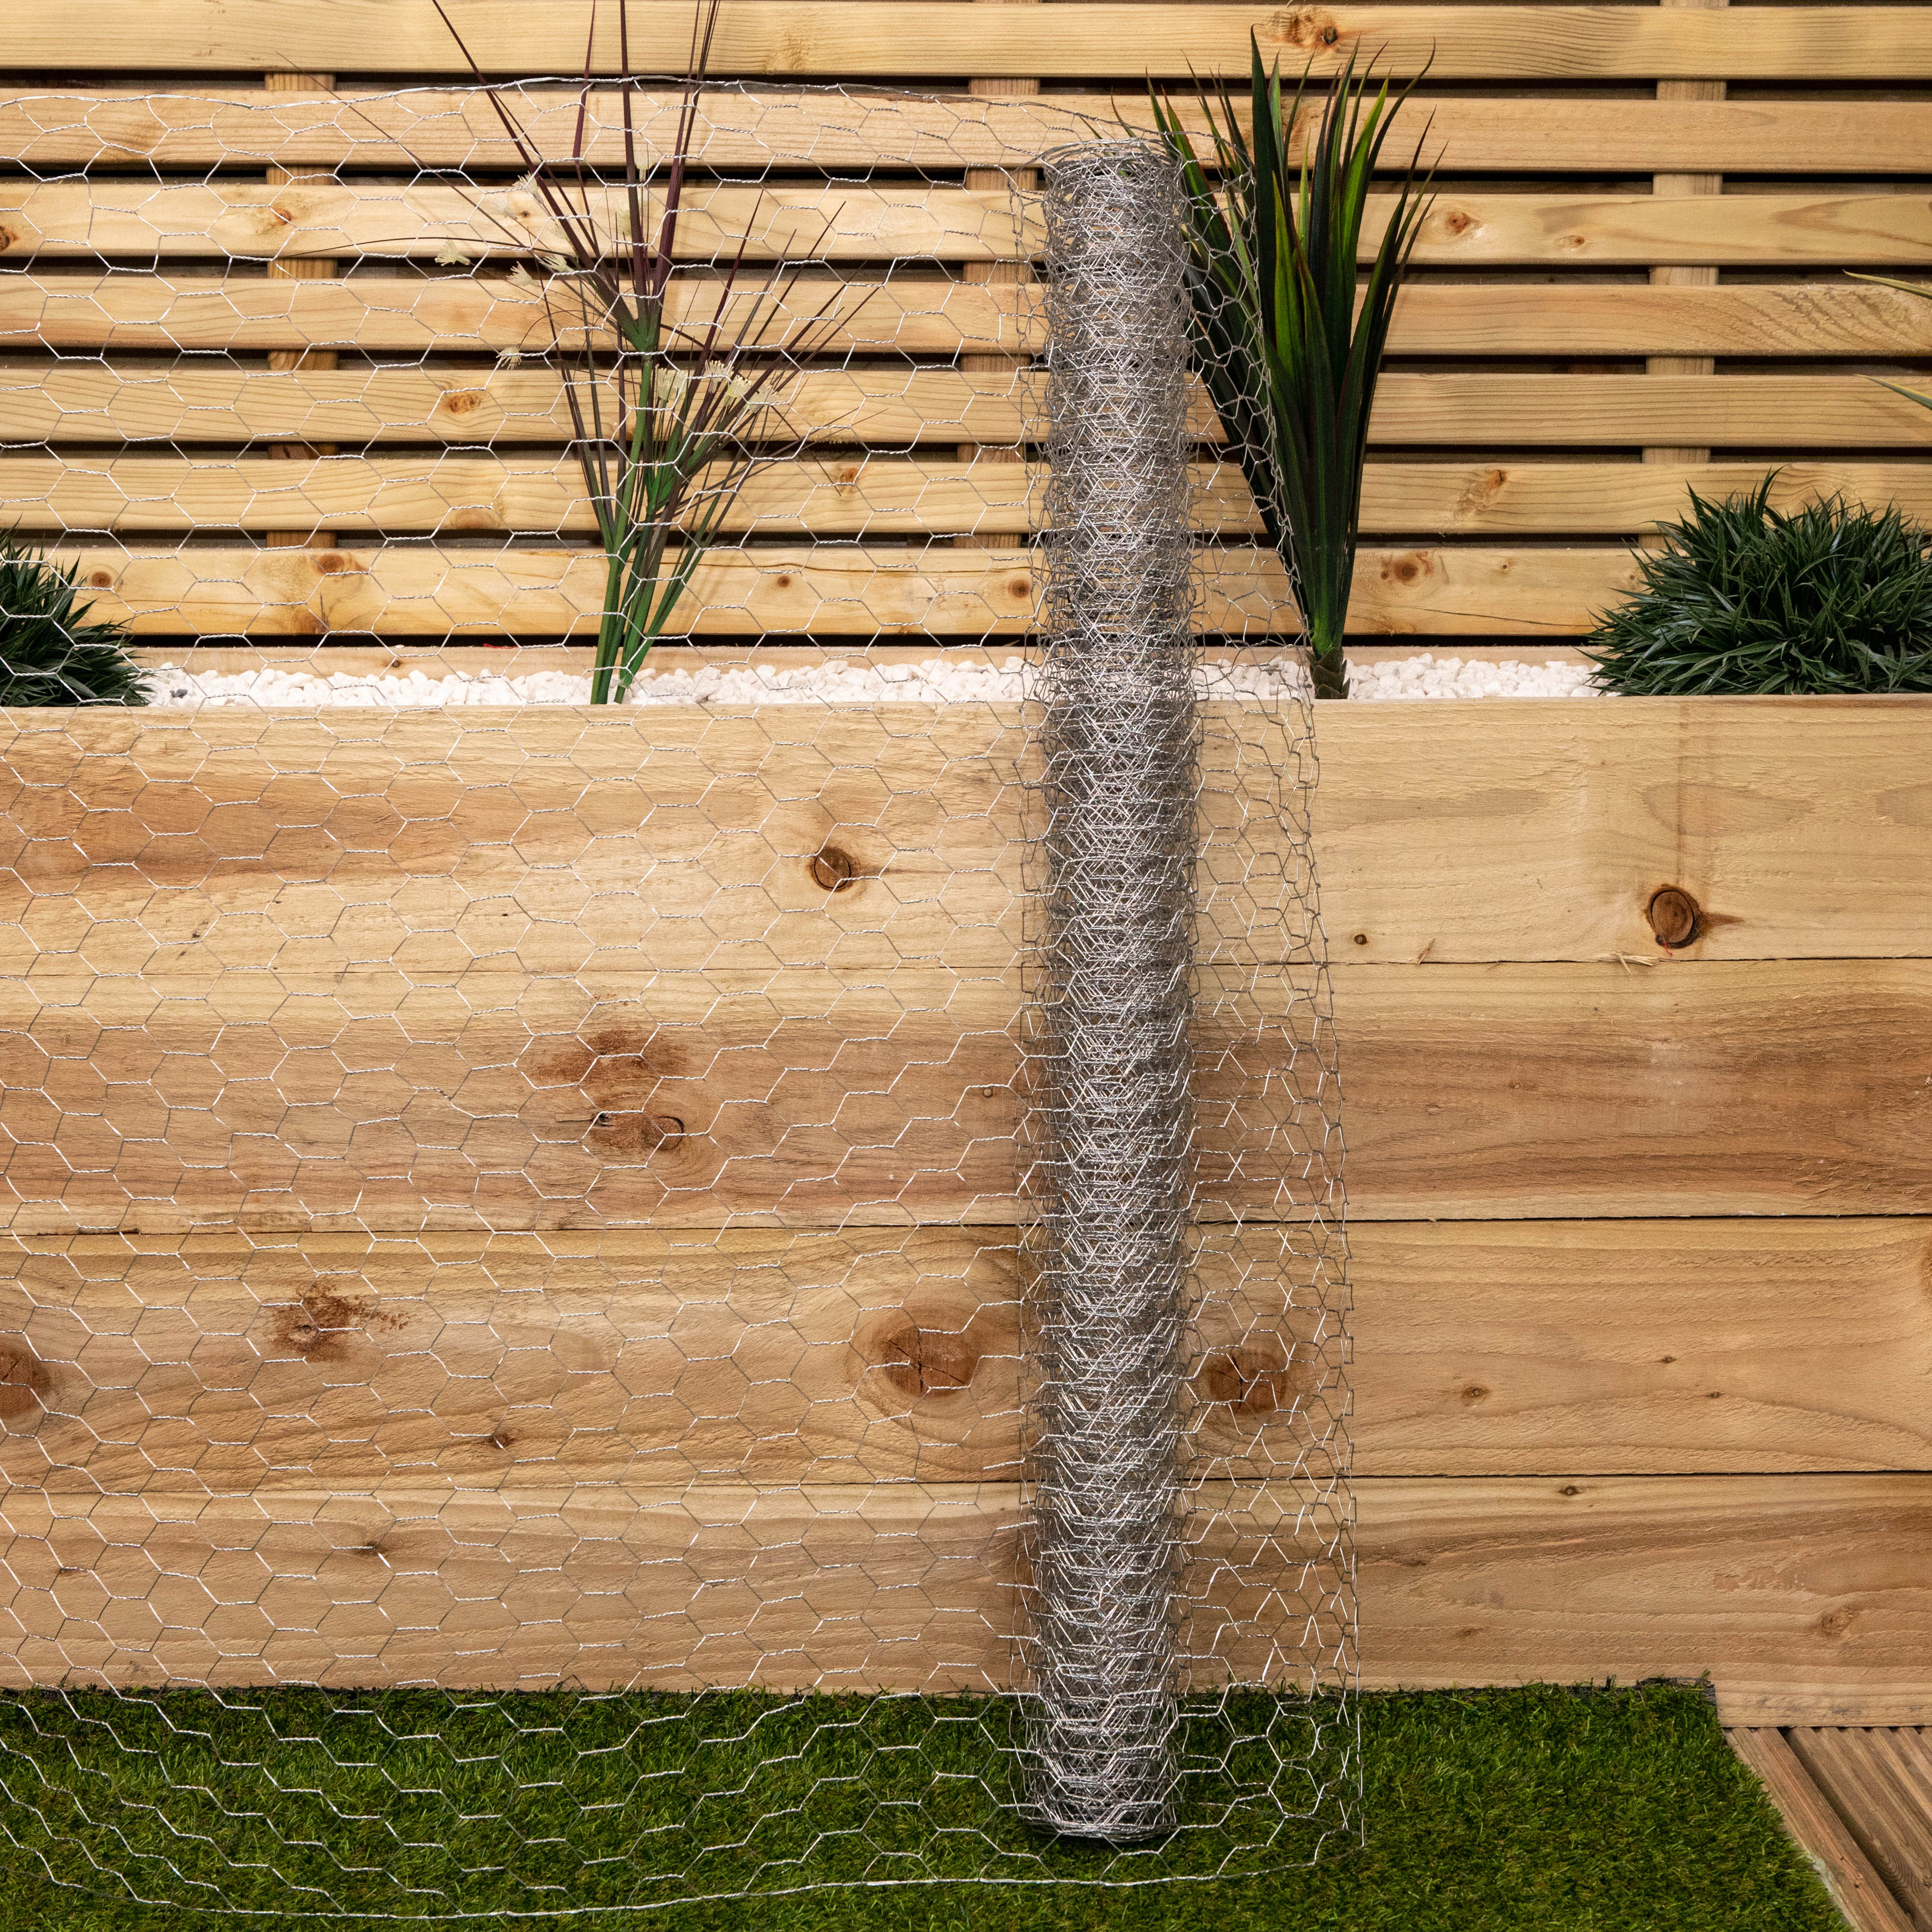 5m x 0.9m x 25mm Galvanised Chicken Wire Garden Netting / Fencing